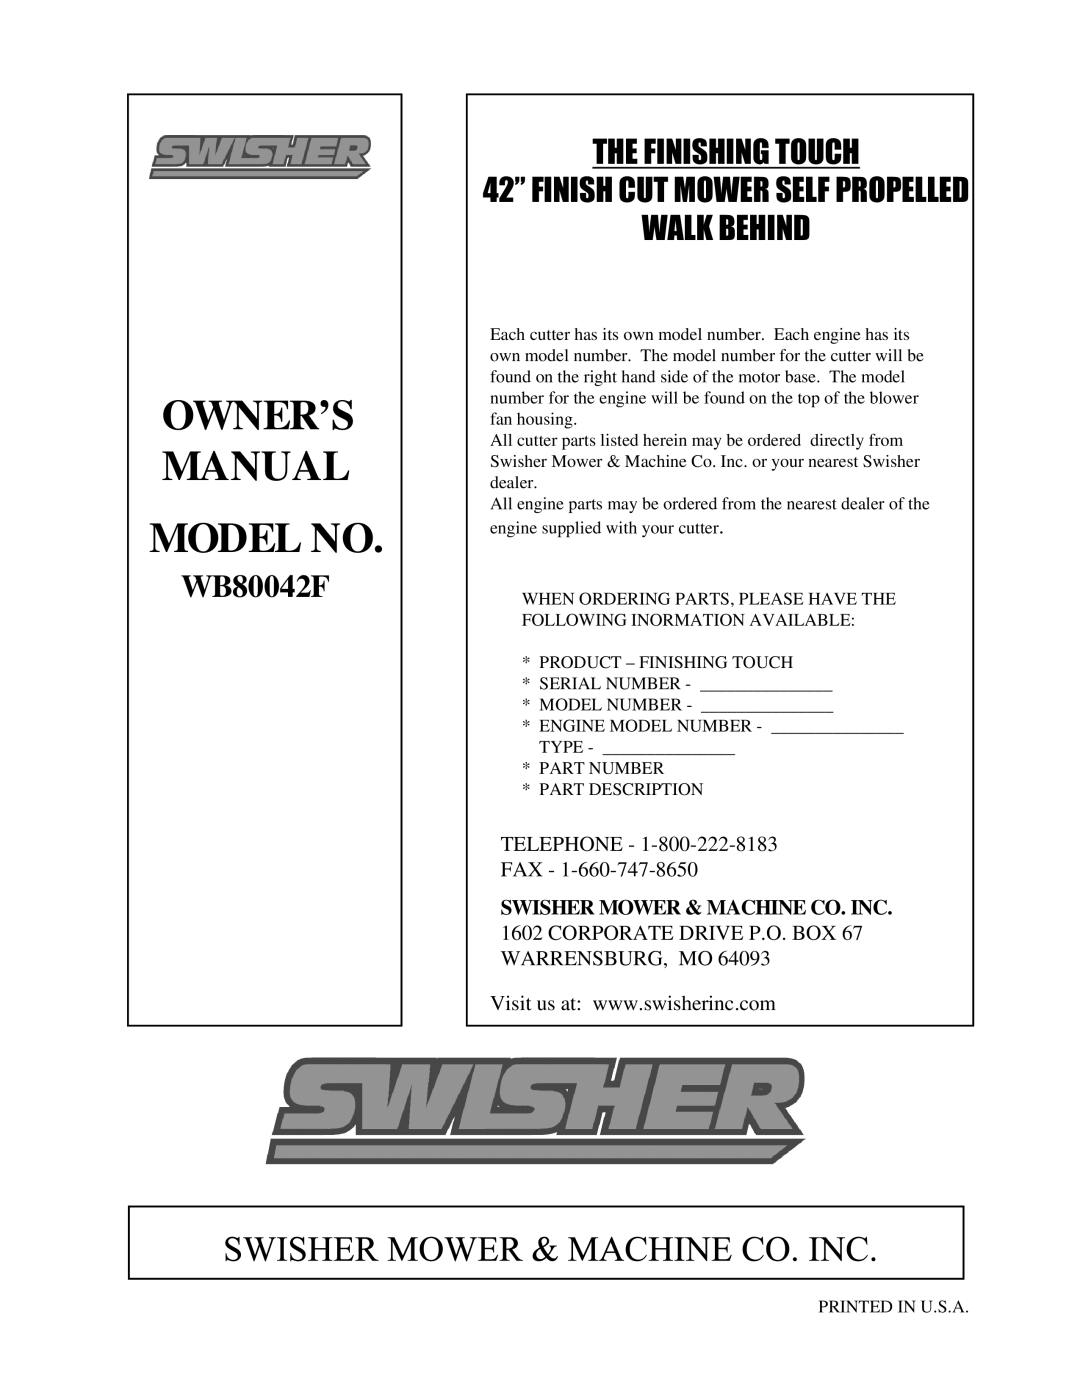 Swisher WB80042F Telephone - Fax, Swisher Mower & Machine Co. Inc, CORPORATE DRIVE P.O. BOX 67 WARRENSBURG, MO, Model No 